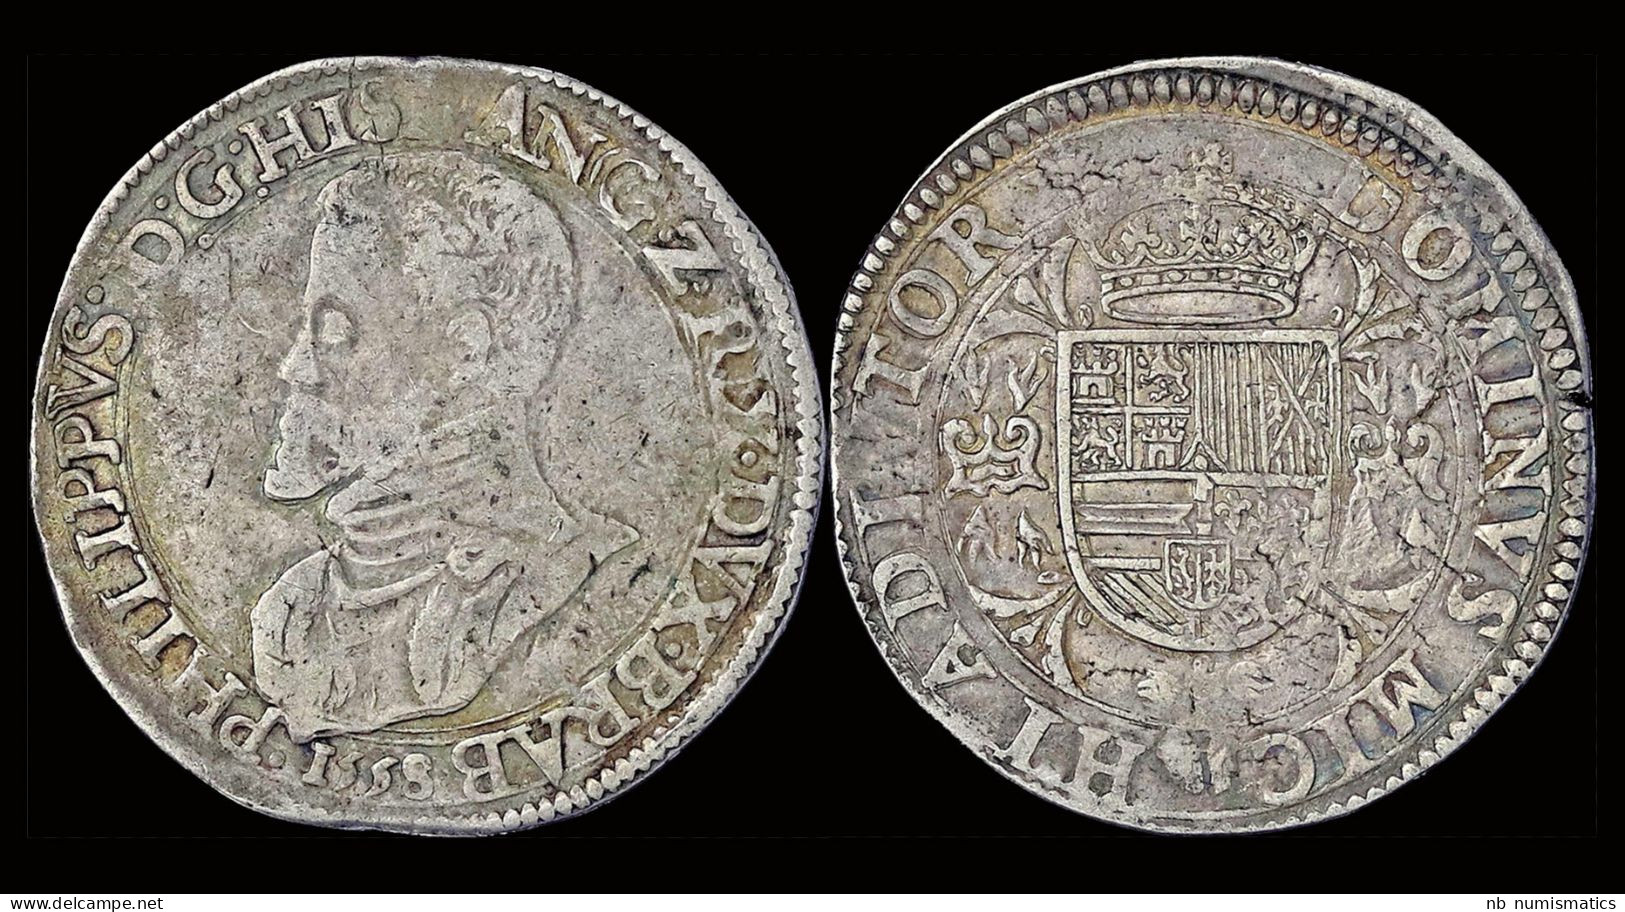 Southern Netherlands Brabant  Filips II Filipsdaalder 1558 - 1556-1713 Pays-Bas Espagols